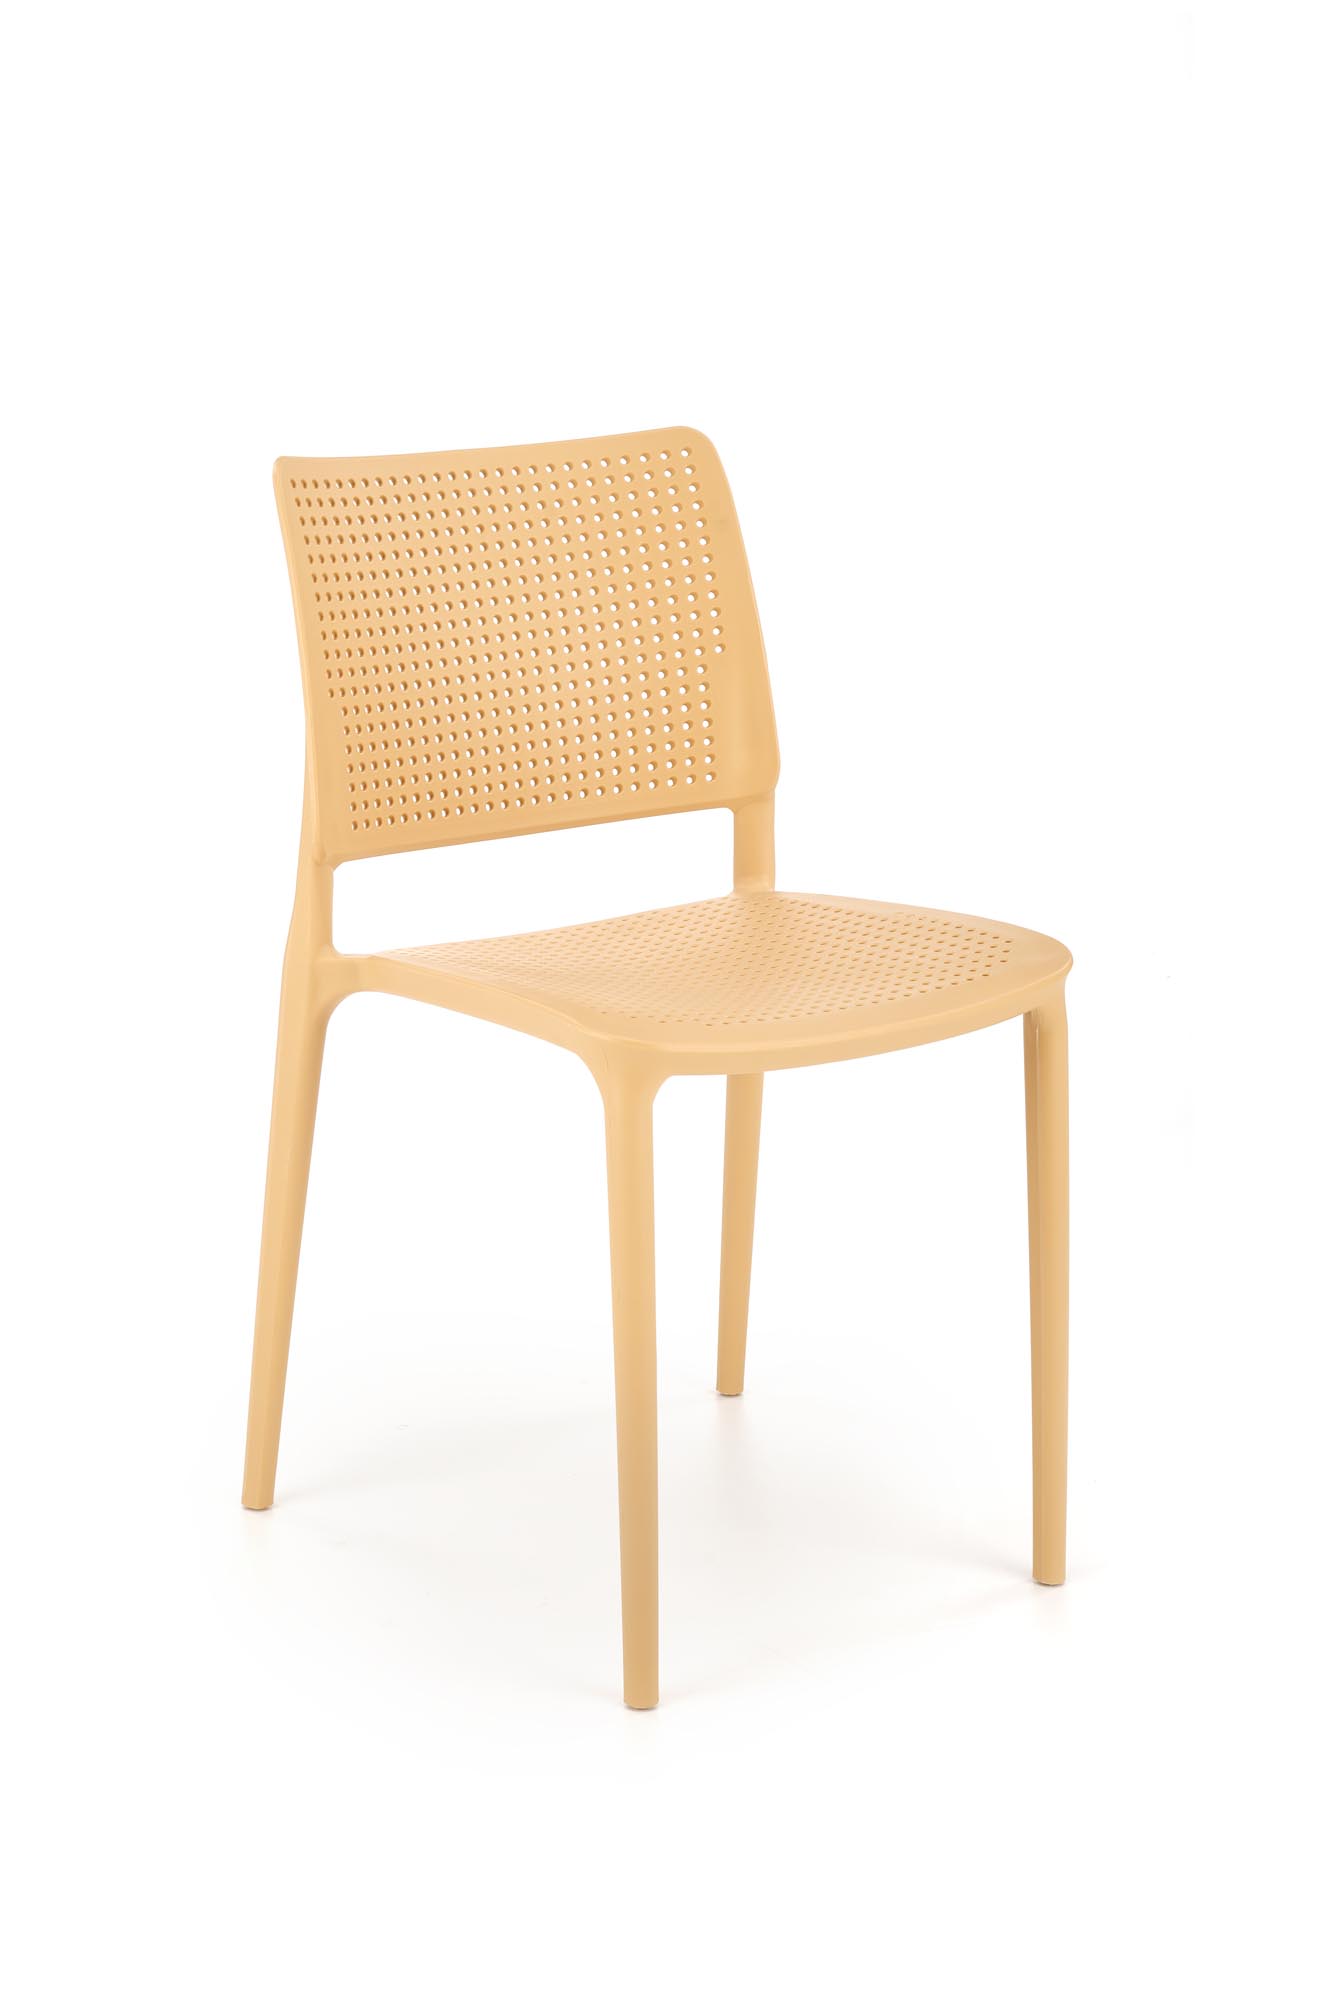 K514 Židle Oranžový (1p=4szt) židle z tworzywa k514 - Oranžový